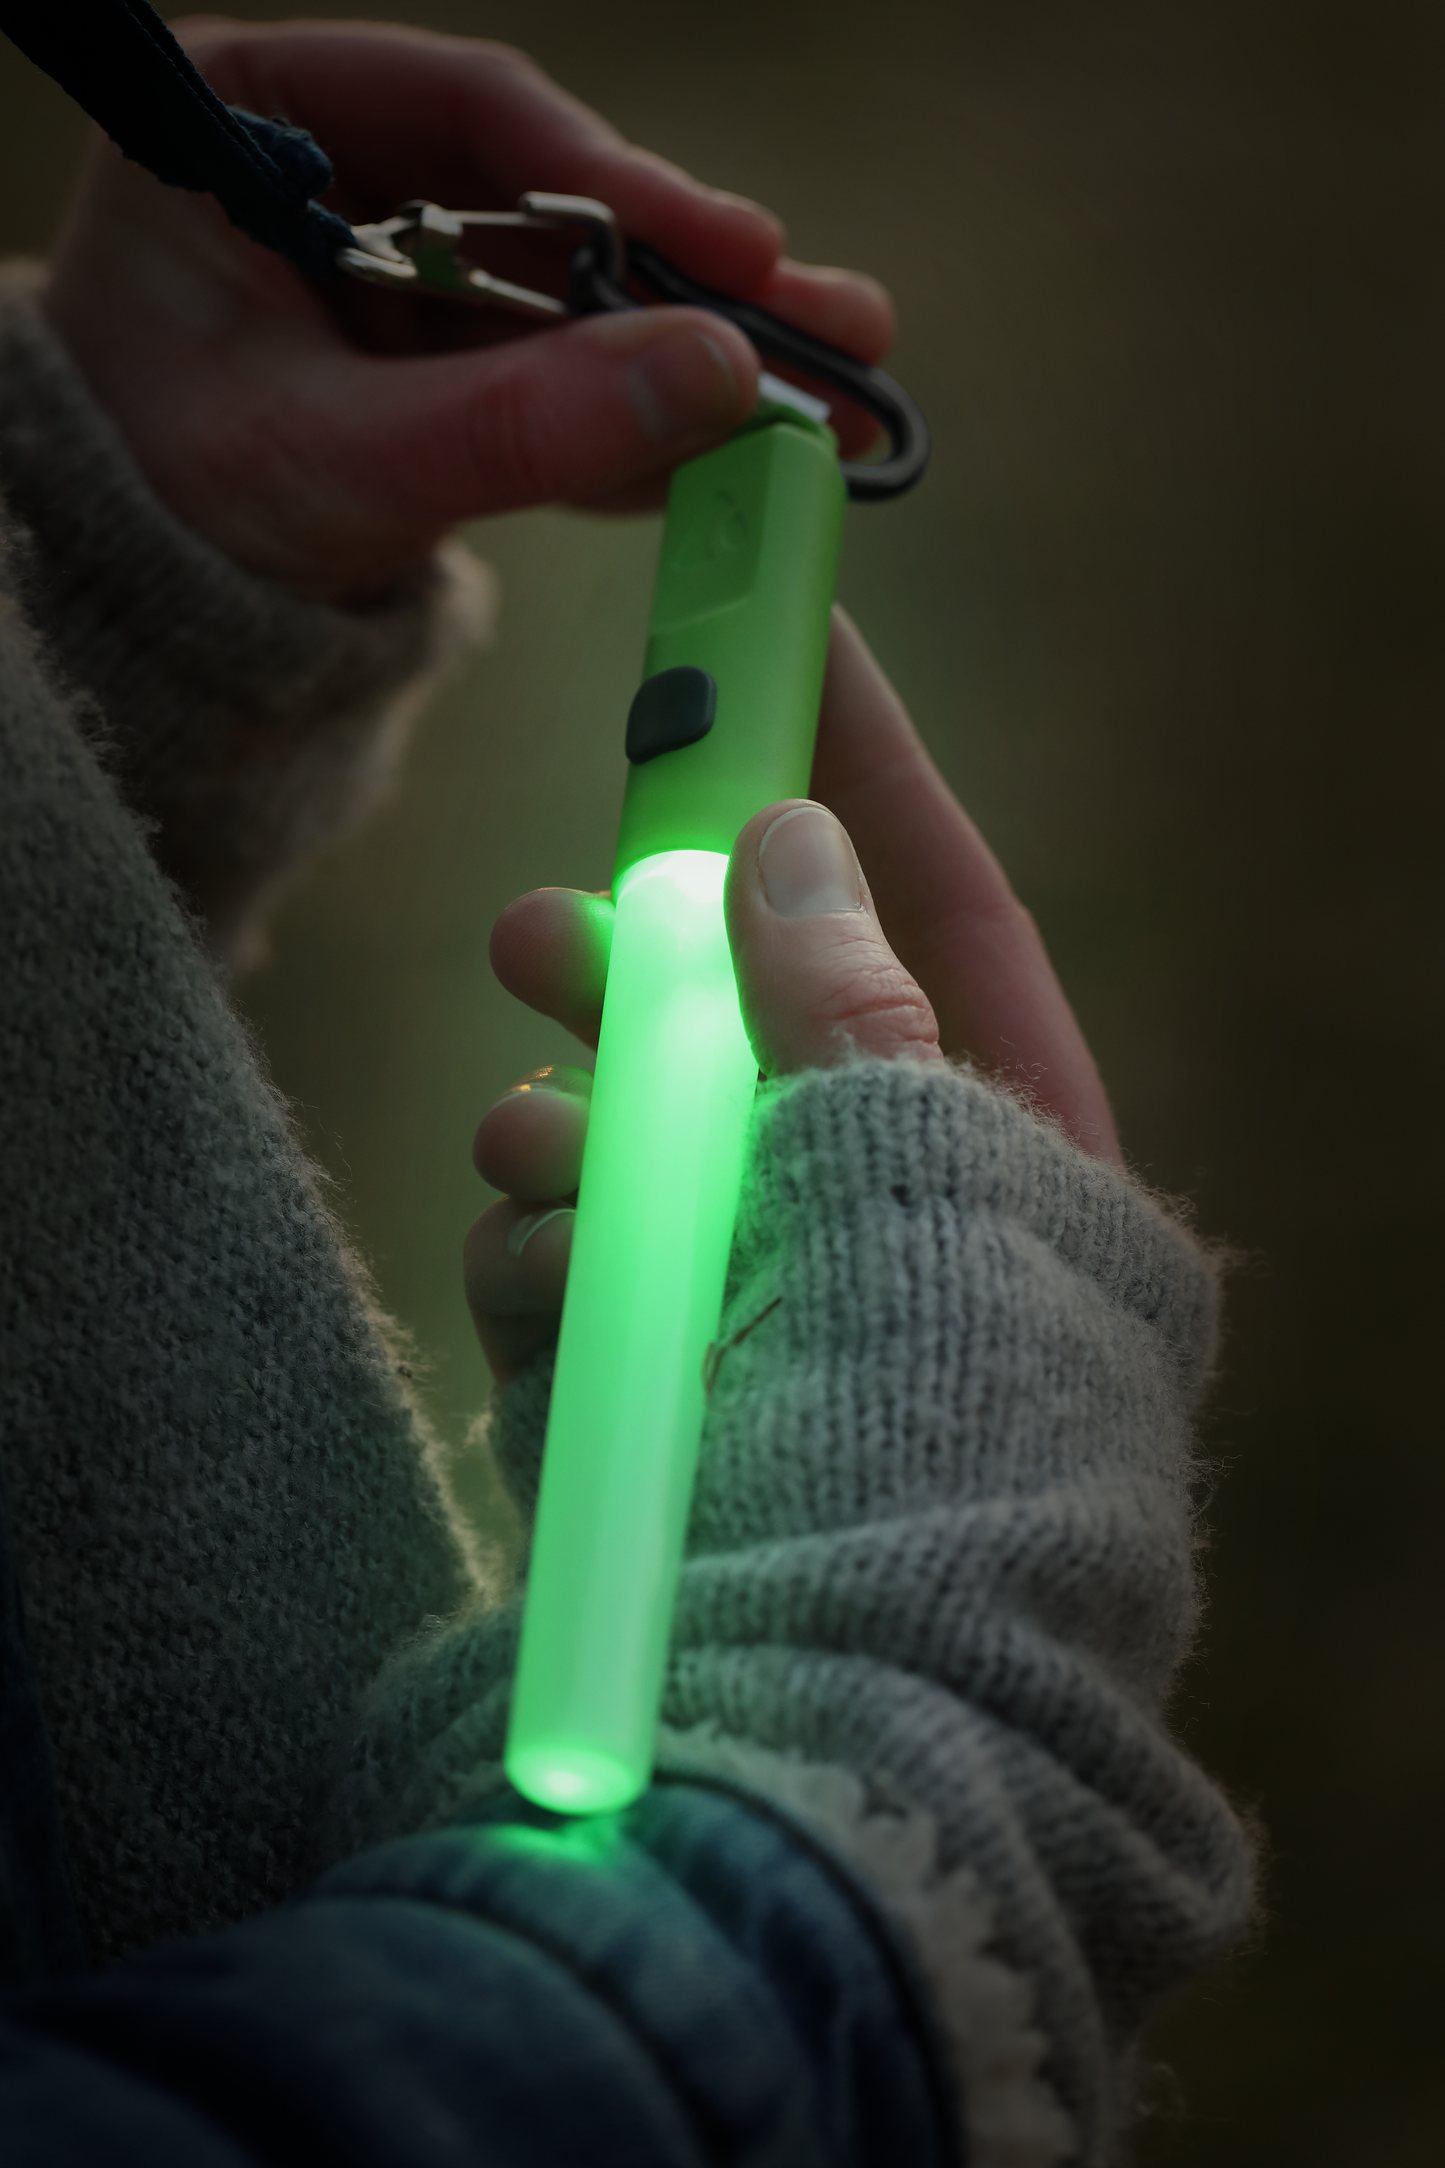 LED Lightstick - Green